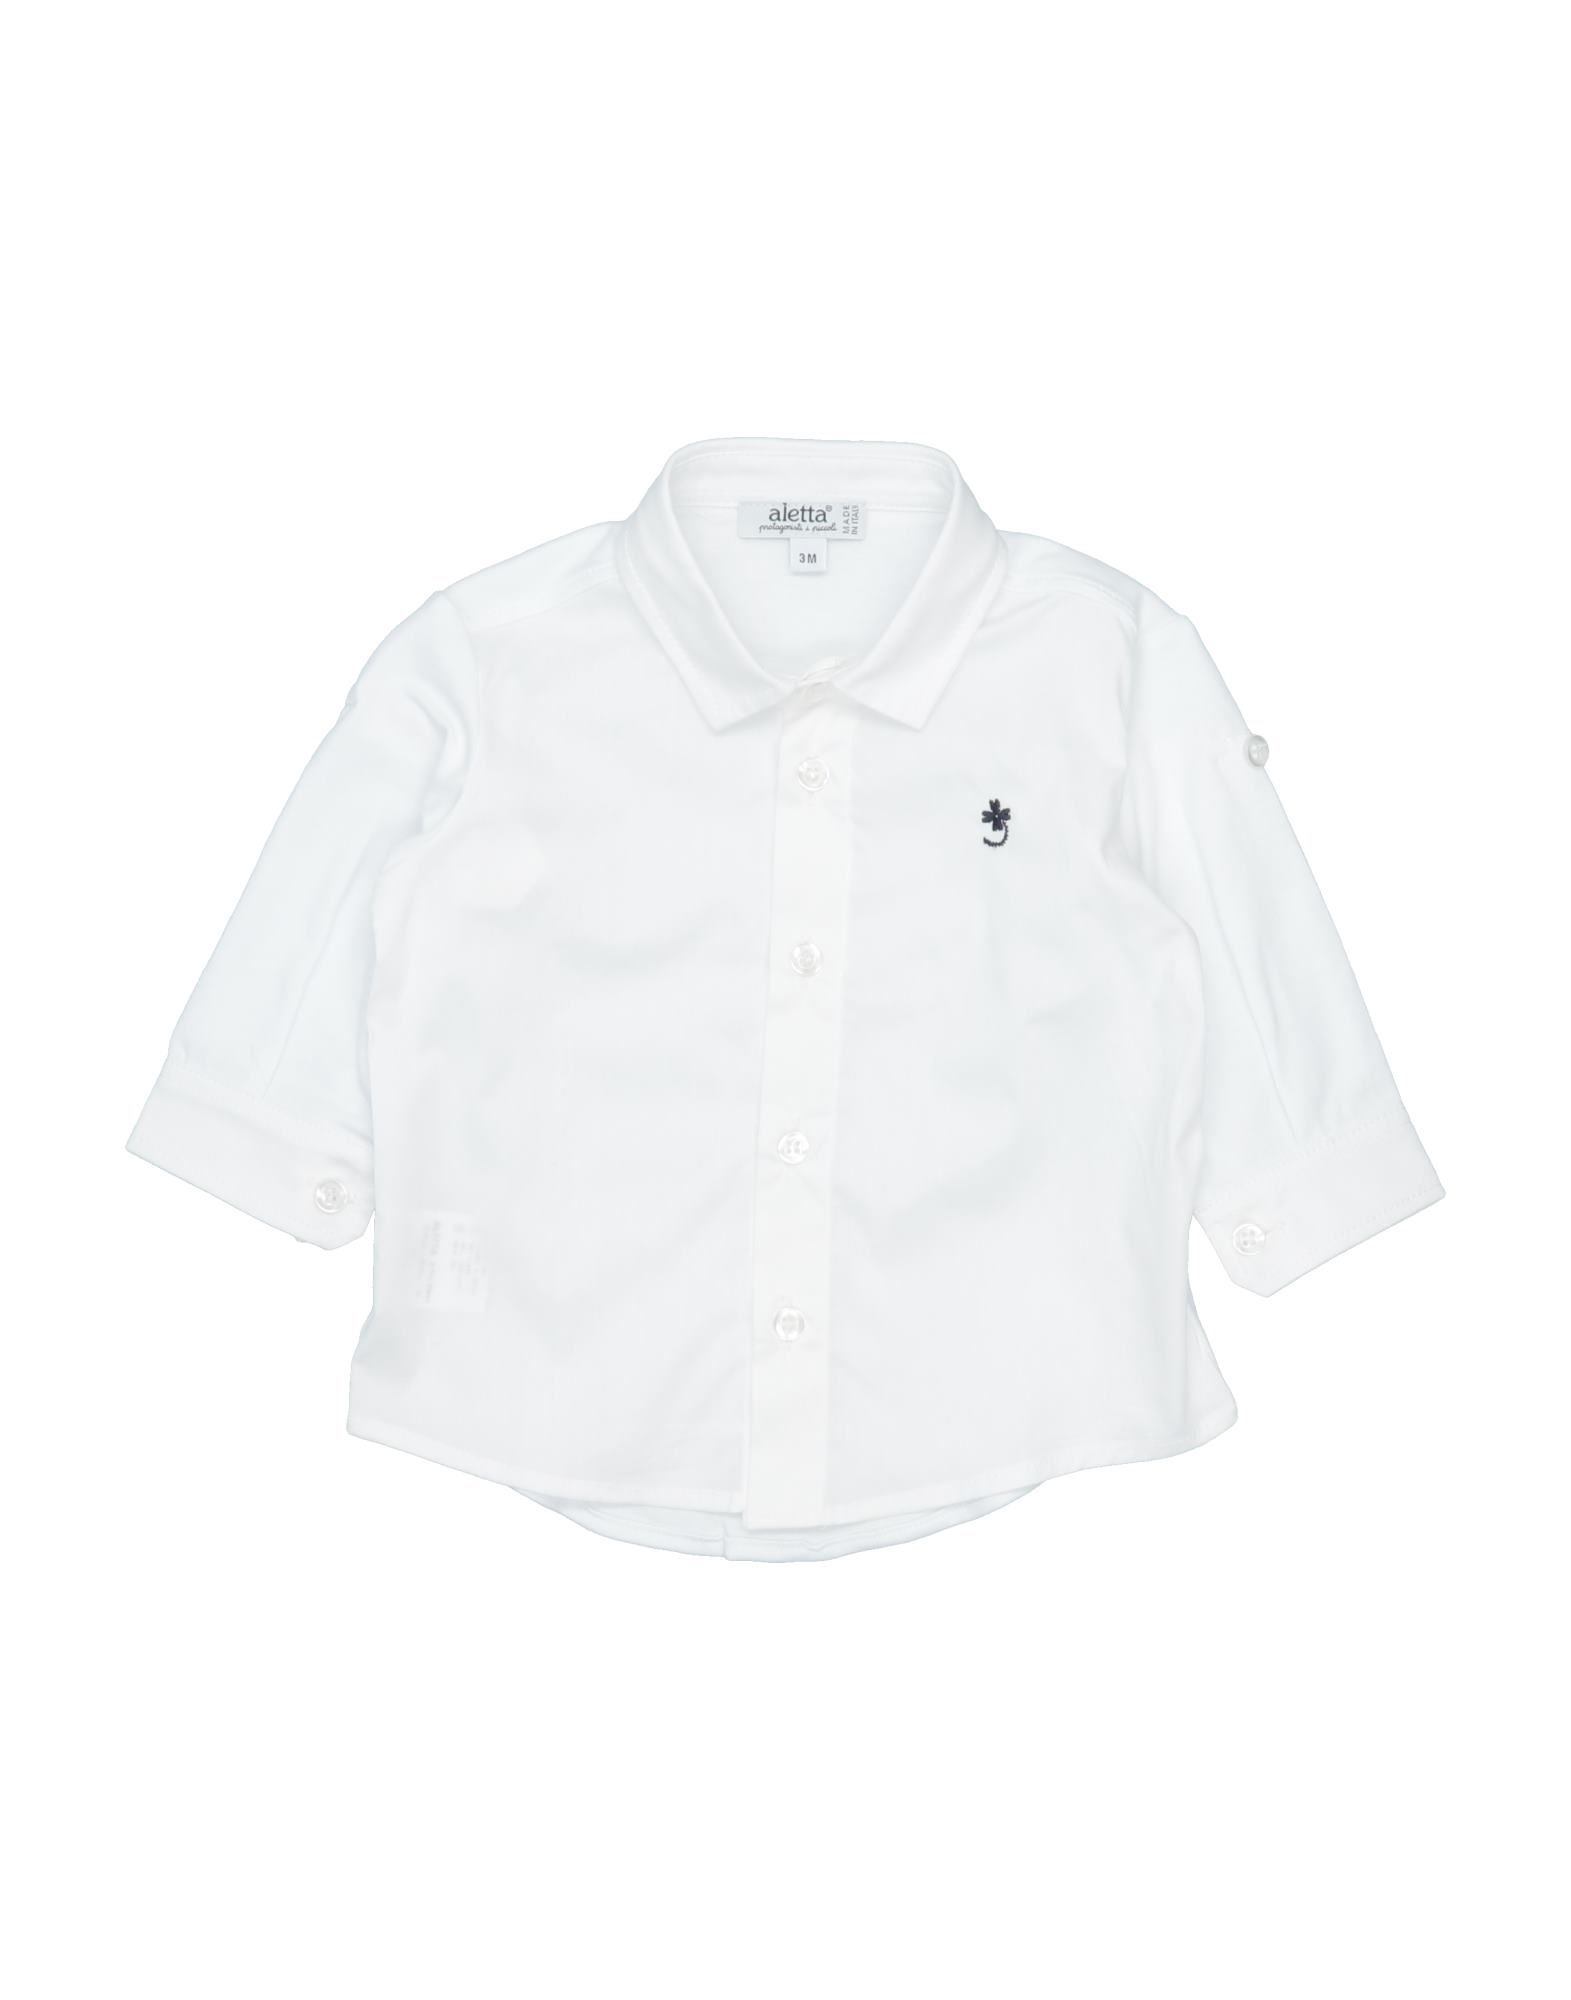 Aletta Kids' Shirts In White